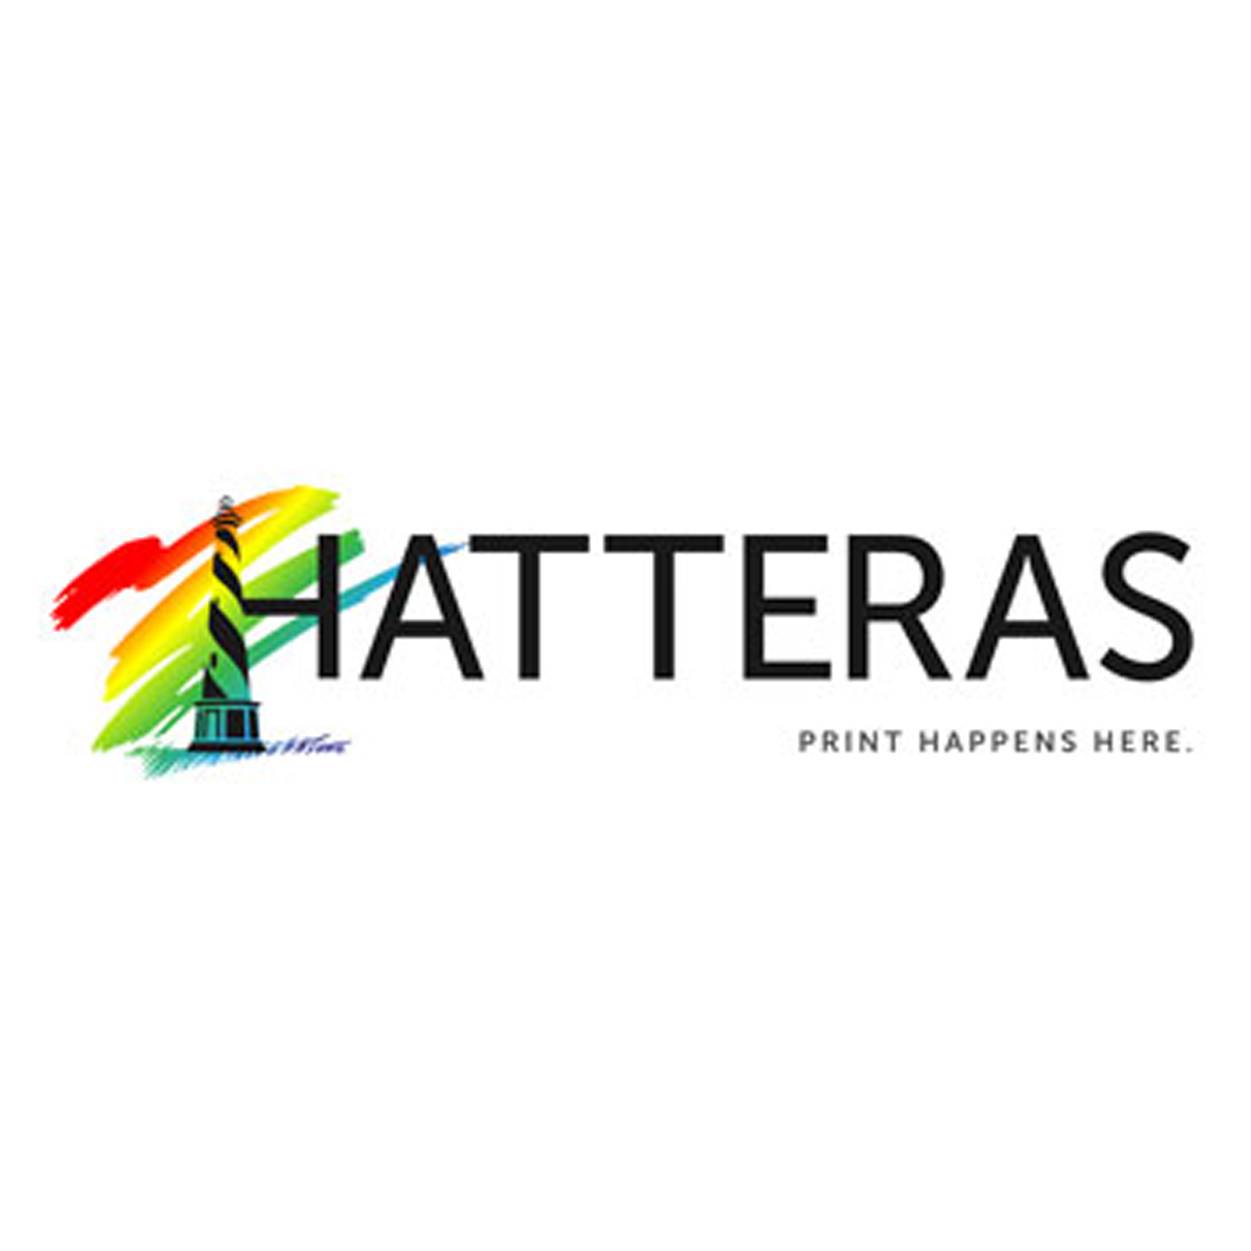 Hatteras-Press